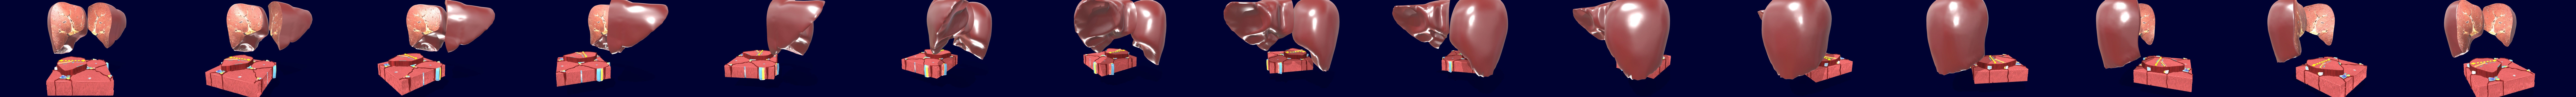 liver histology model labeled